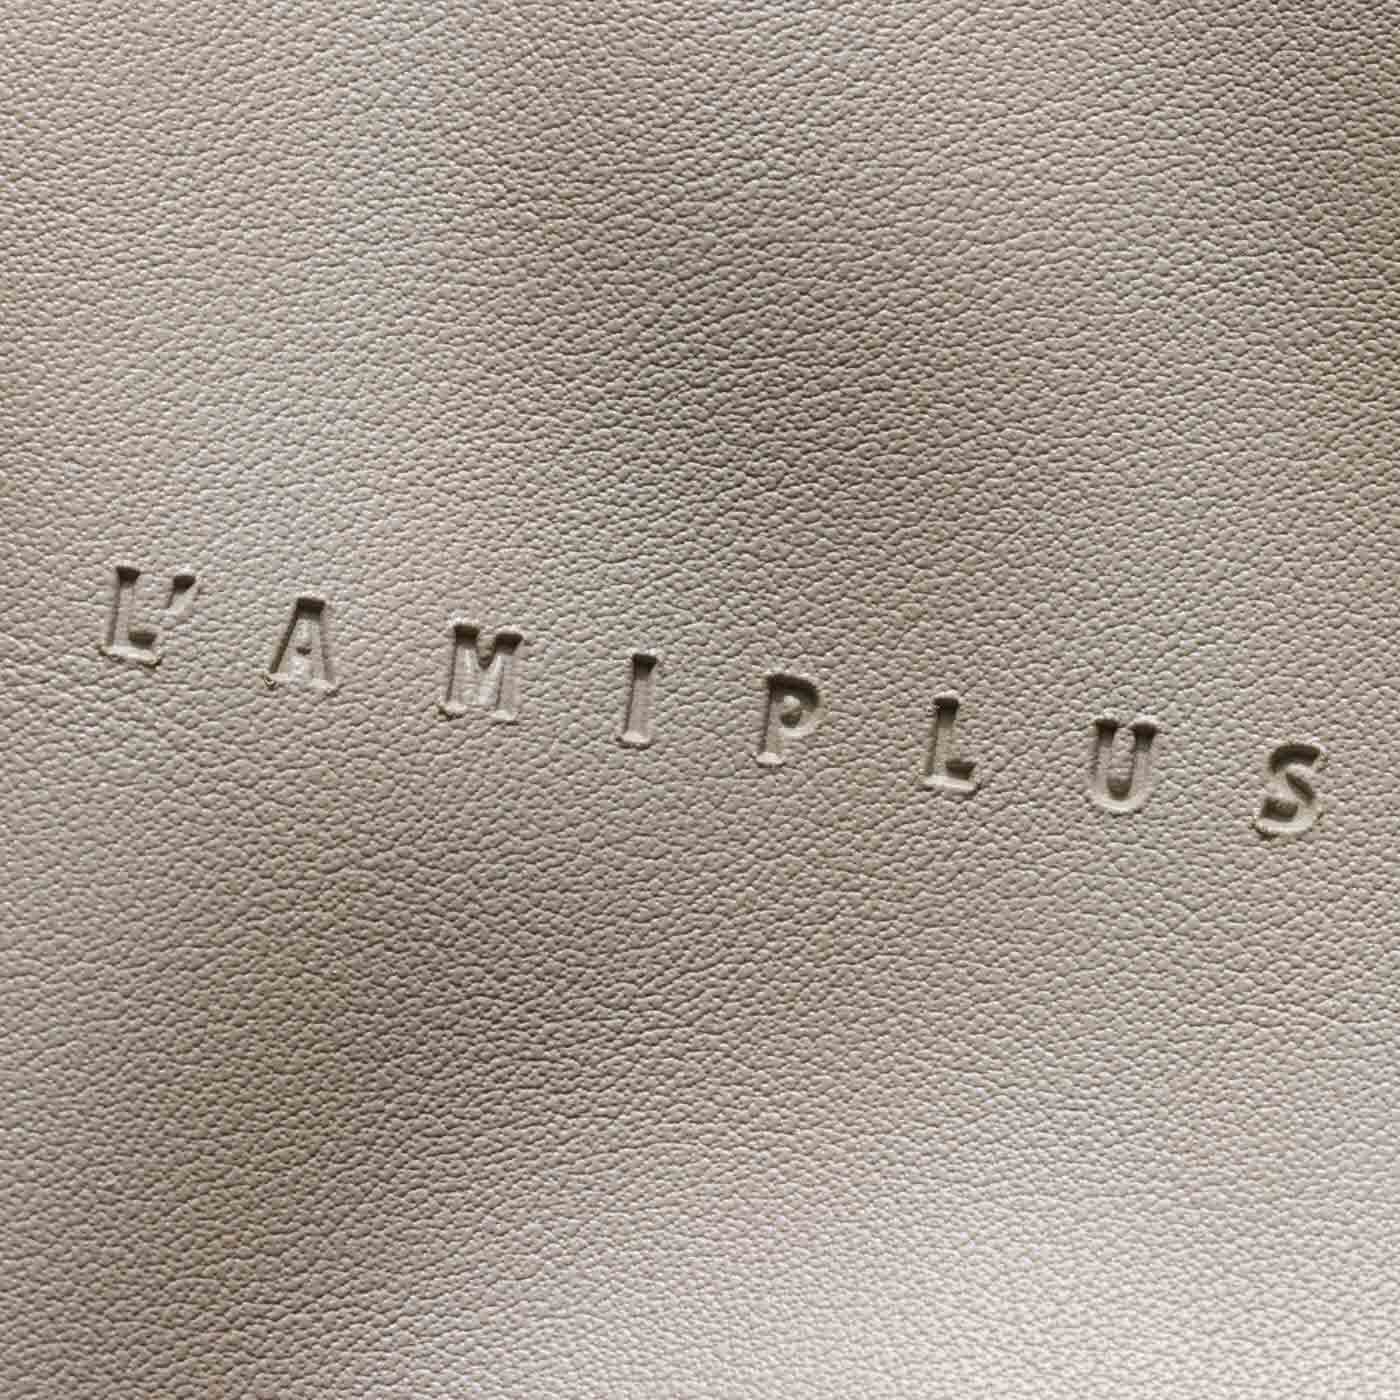 L'AMIPLUS|ラミプリュス　気分に合わせて持ち変え 表情が変わる シンプルトートバッグの会|無地サイドには型押しのロゴがポイントに